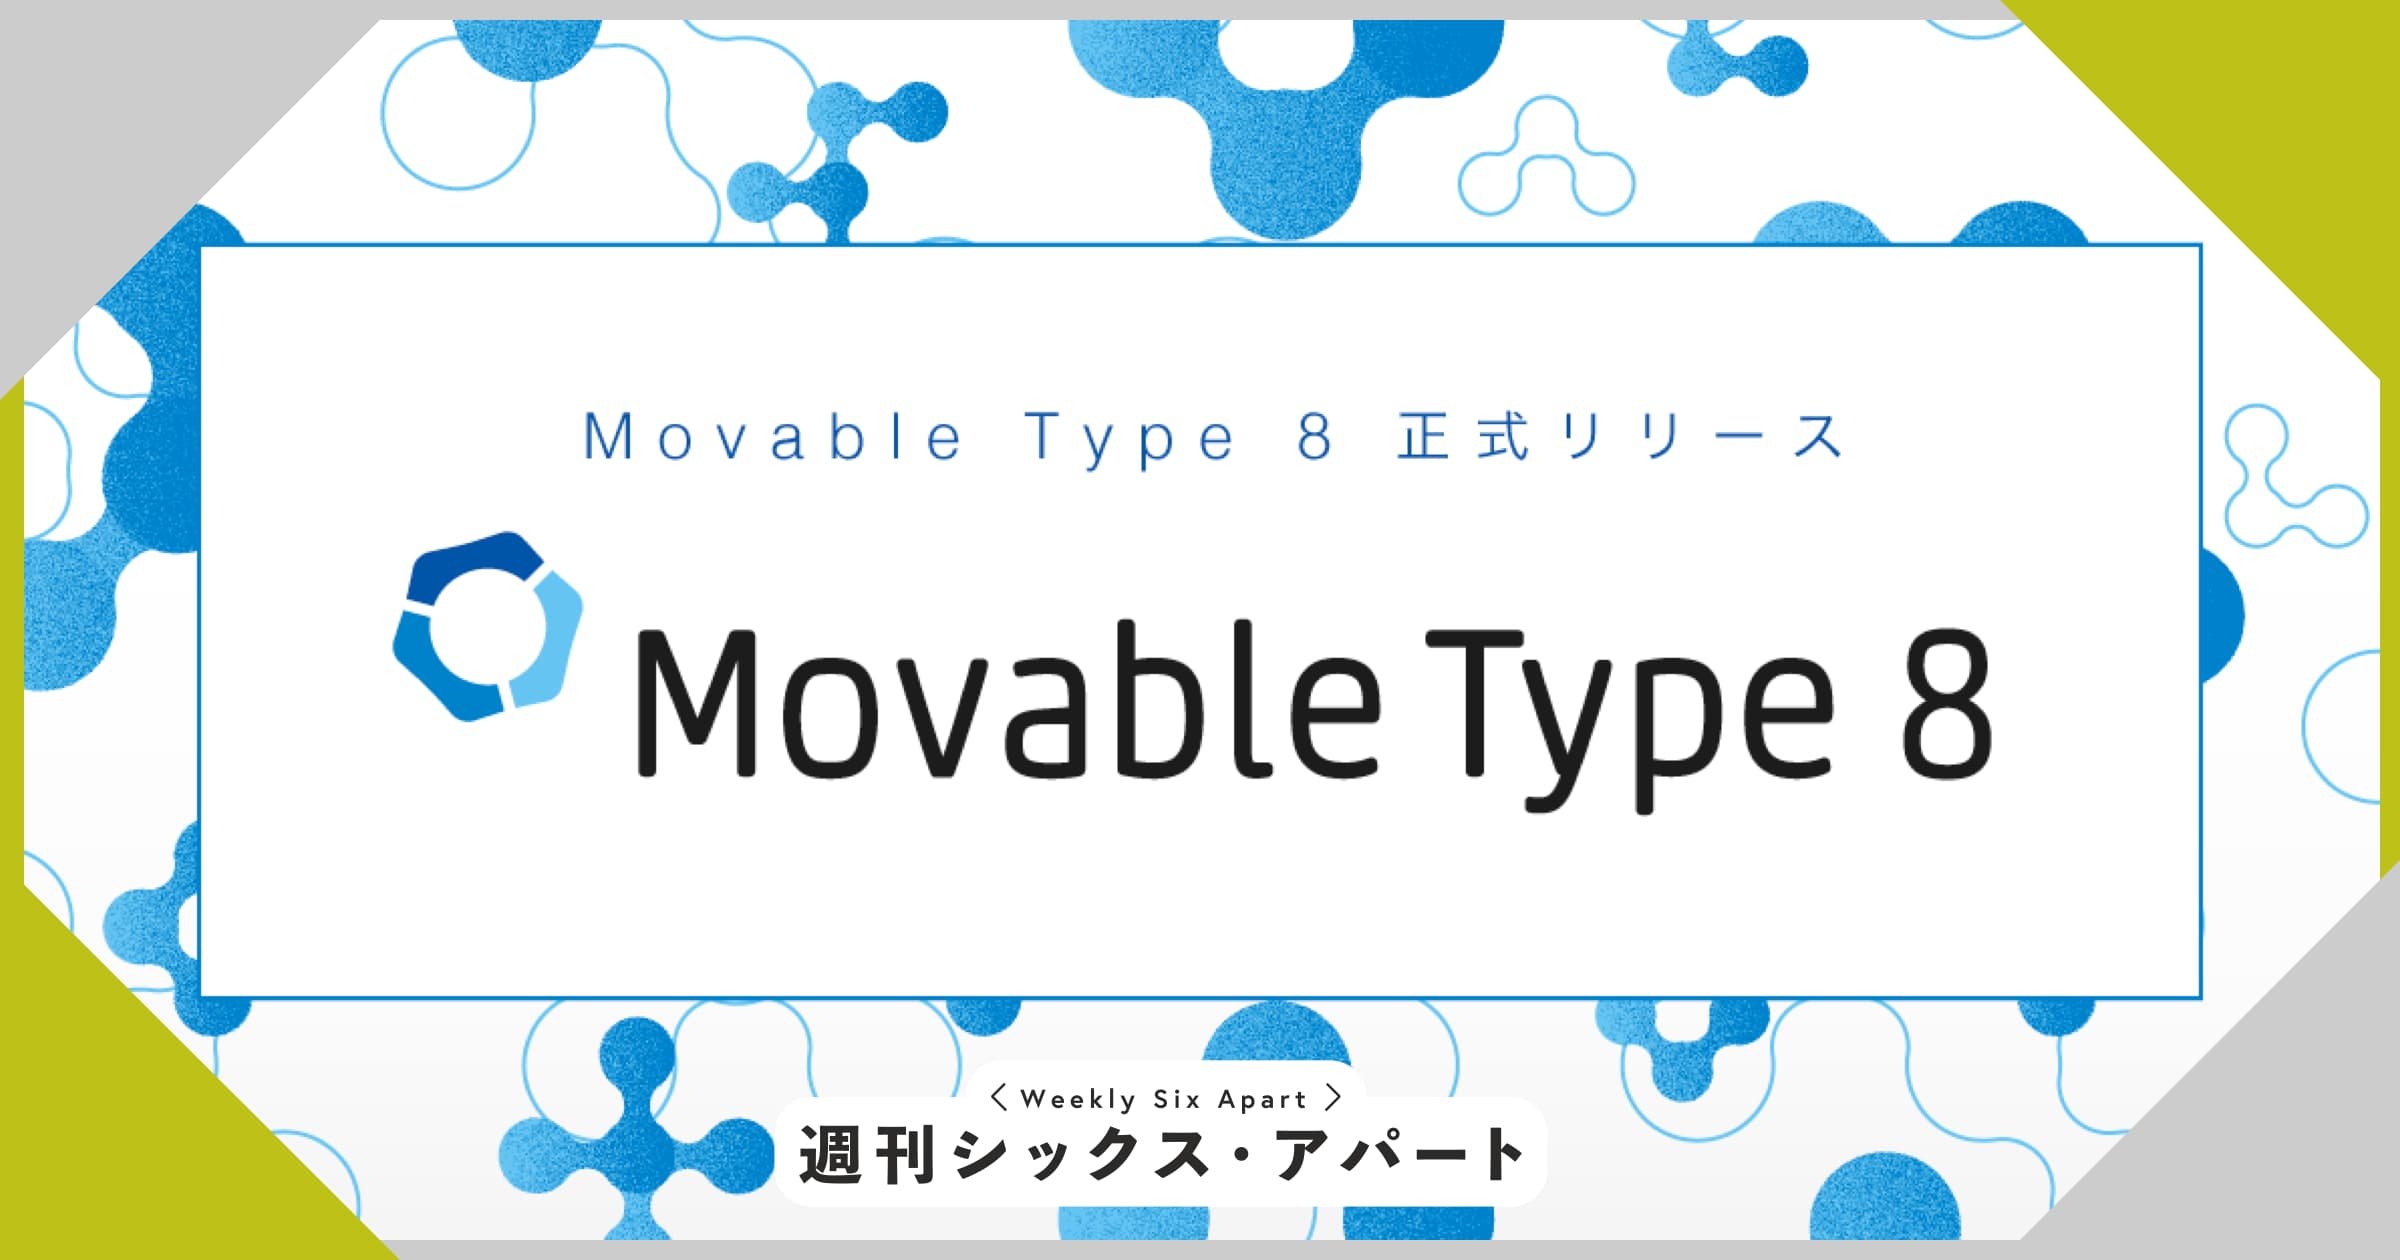 祝メジャーバージョンアップ！「Movable Type 8」をリリースいたしました #週刊SA